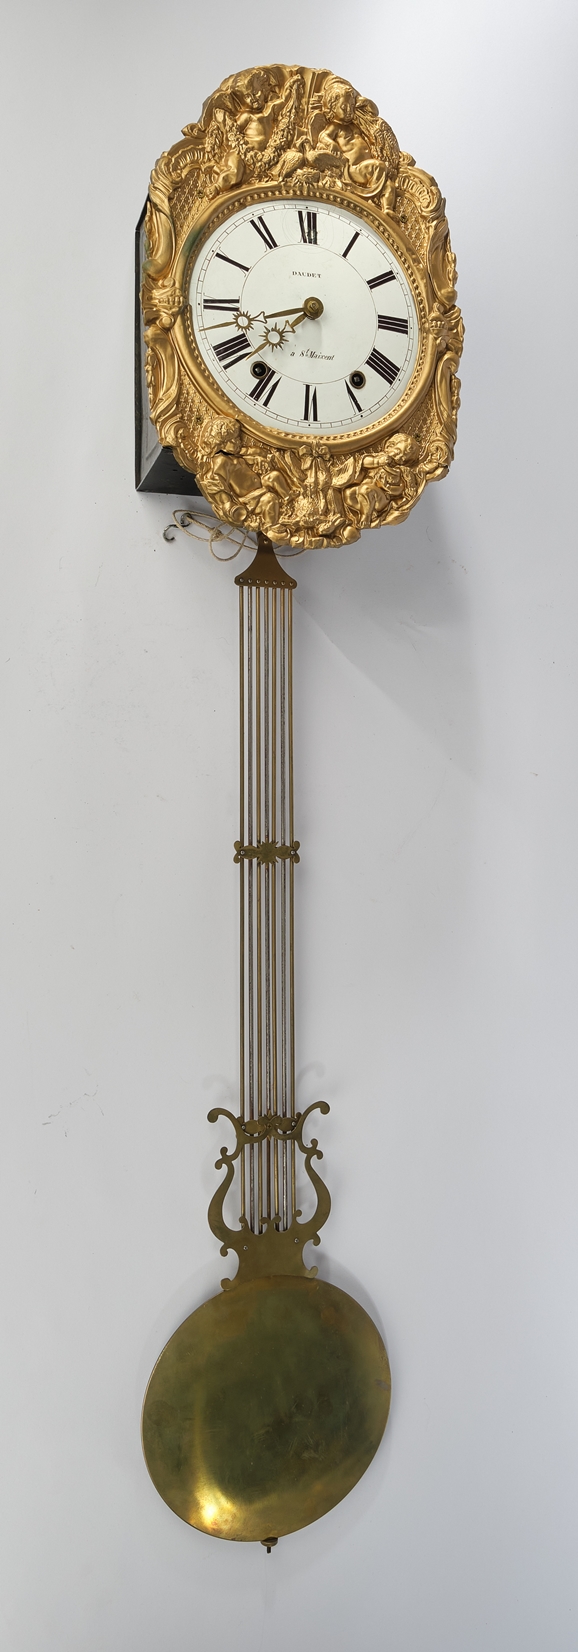 Comtoise, Frankreich, 19. Jh., Eisengehäuse, ovales, geprägtes Messingblech mit Putten als Allegori